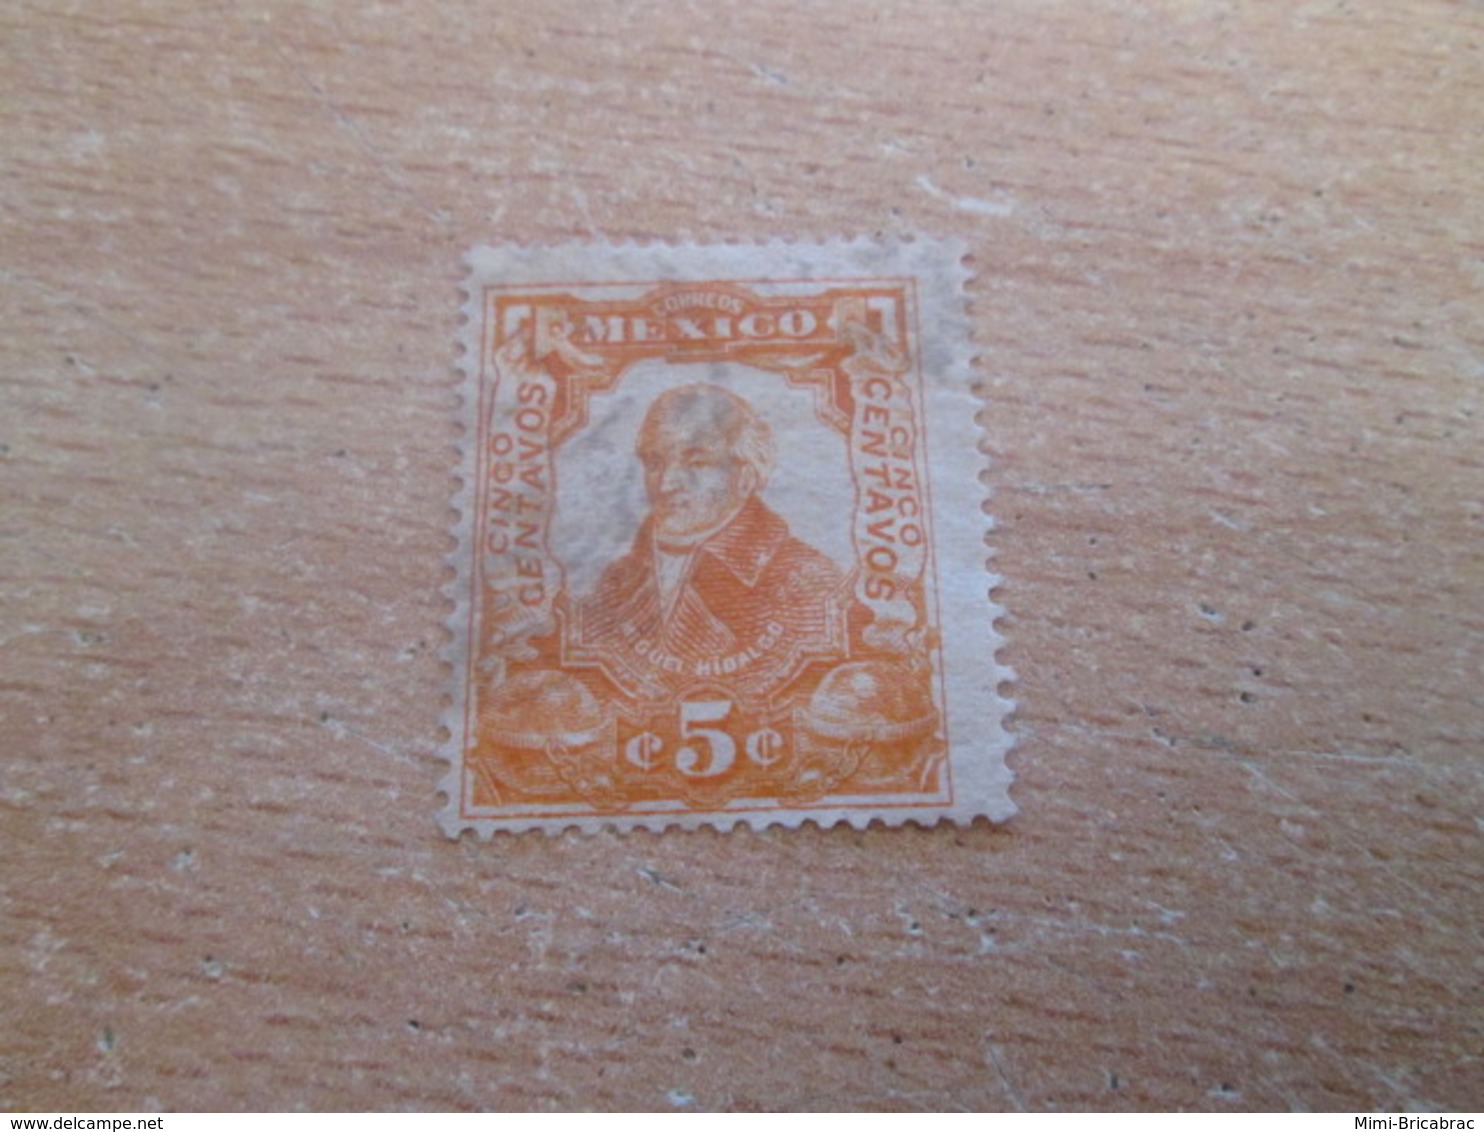 PUB1119 Timbre CORREIO MEXICO (cadeau Publicitaire NAZART Années 60) Début 20e Siècle 5 CENTAVOS ORANGE - Unused Stamps